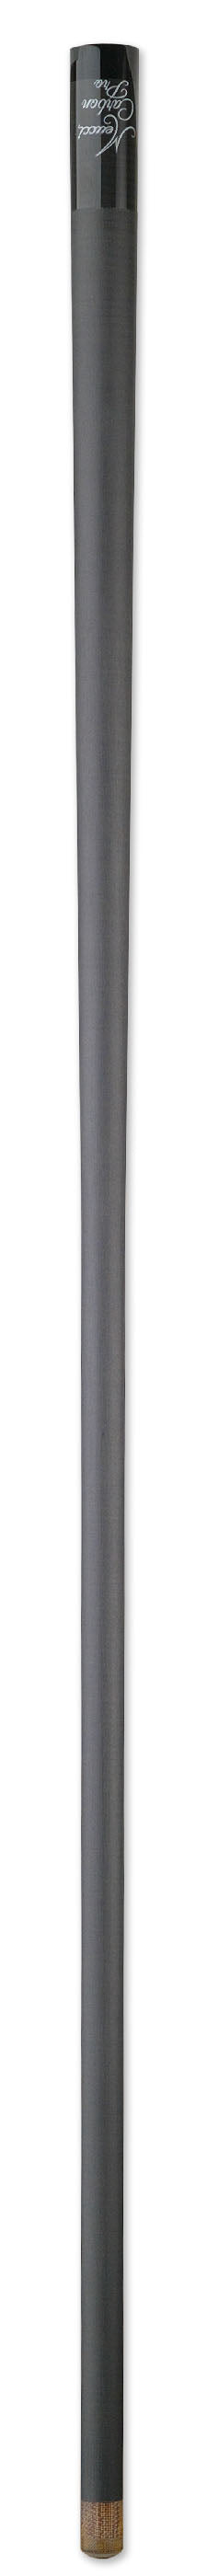 Meucci Carbon Fiber Break Shaft - 13mm -Meucci